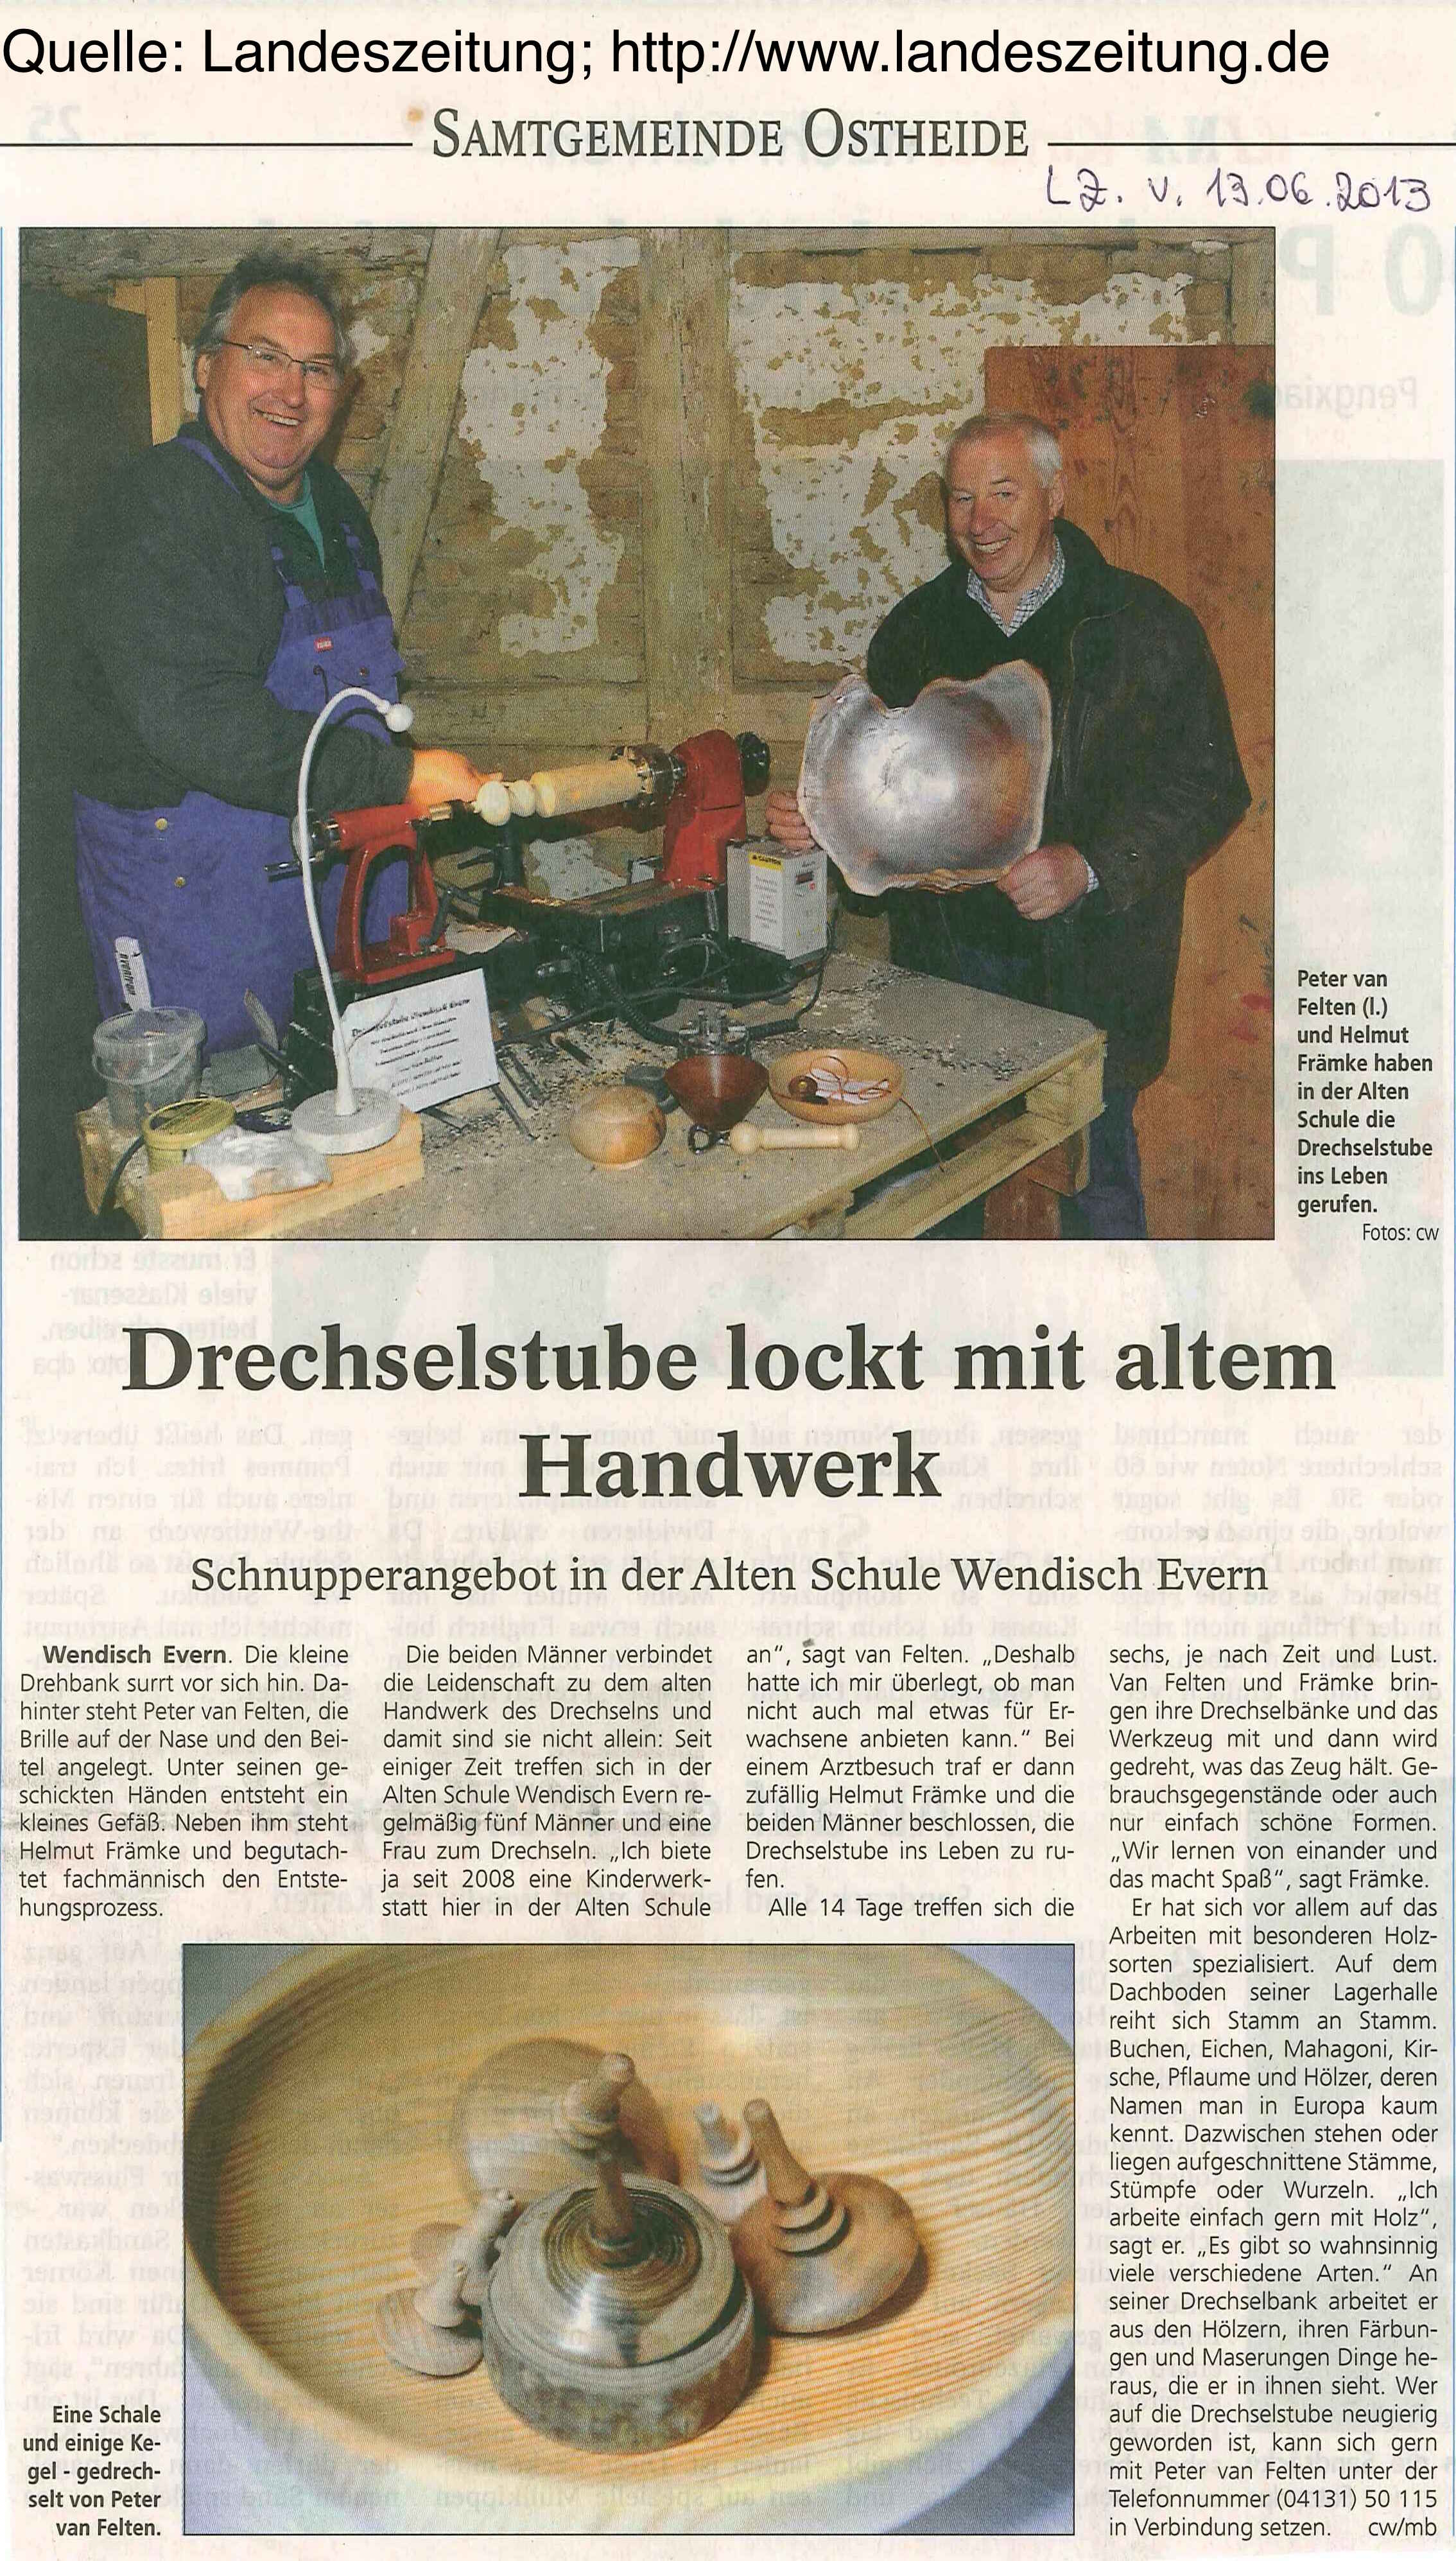 Bericht Landeszeitung vom 13.06.2013